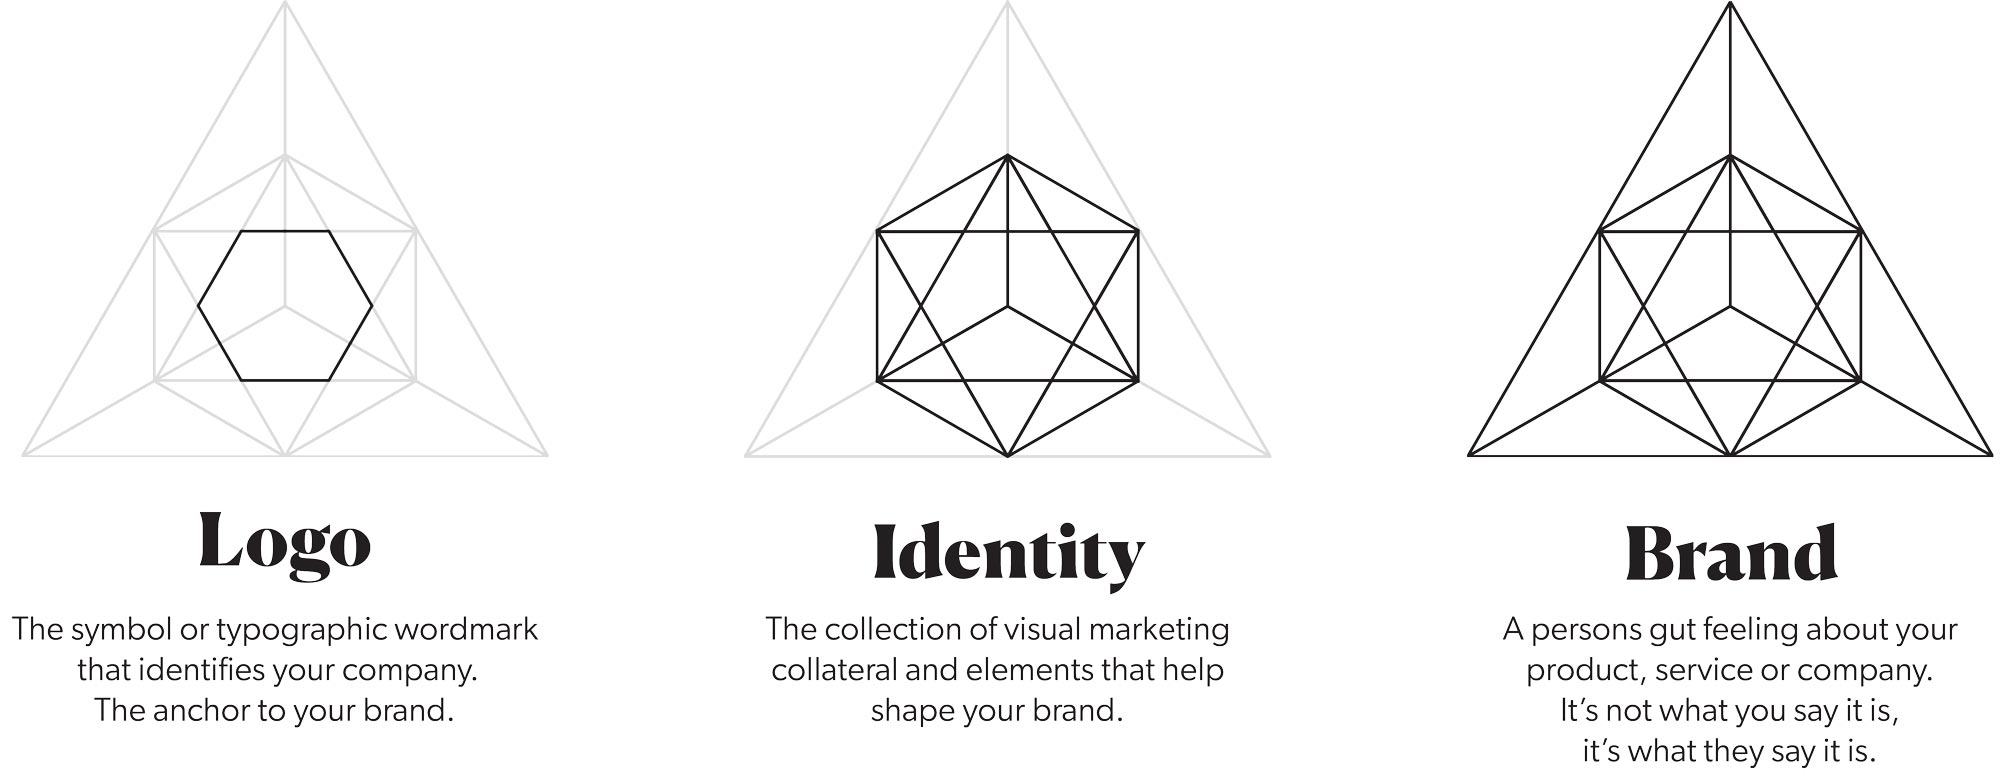 Brand Identity Logo